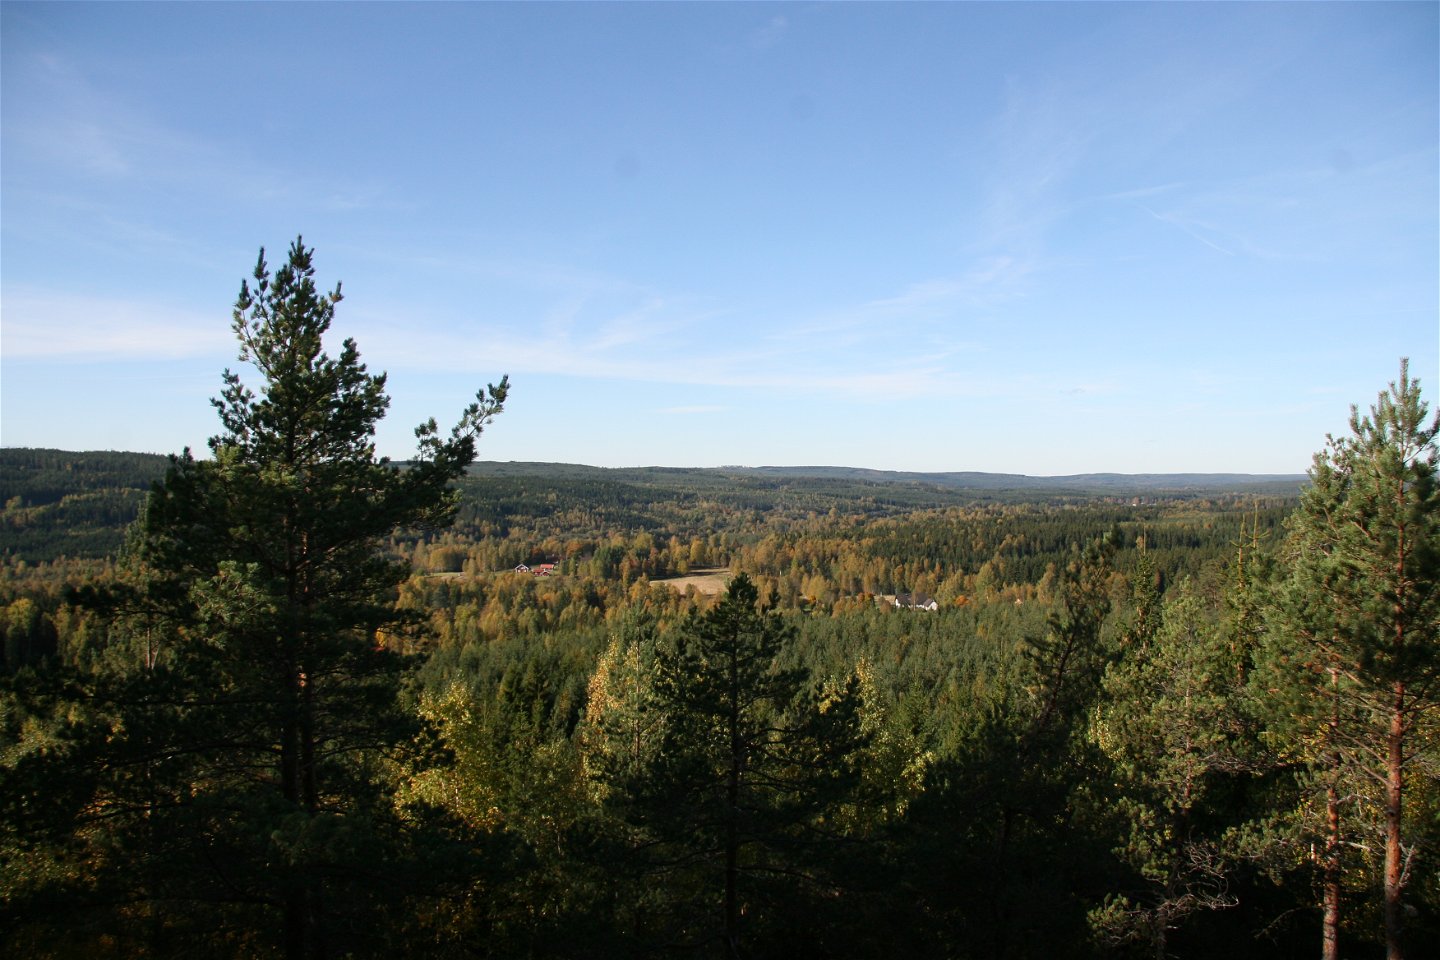 Utsikt över ett skogslandskap med lite åkermark insprängt här och där.